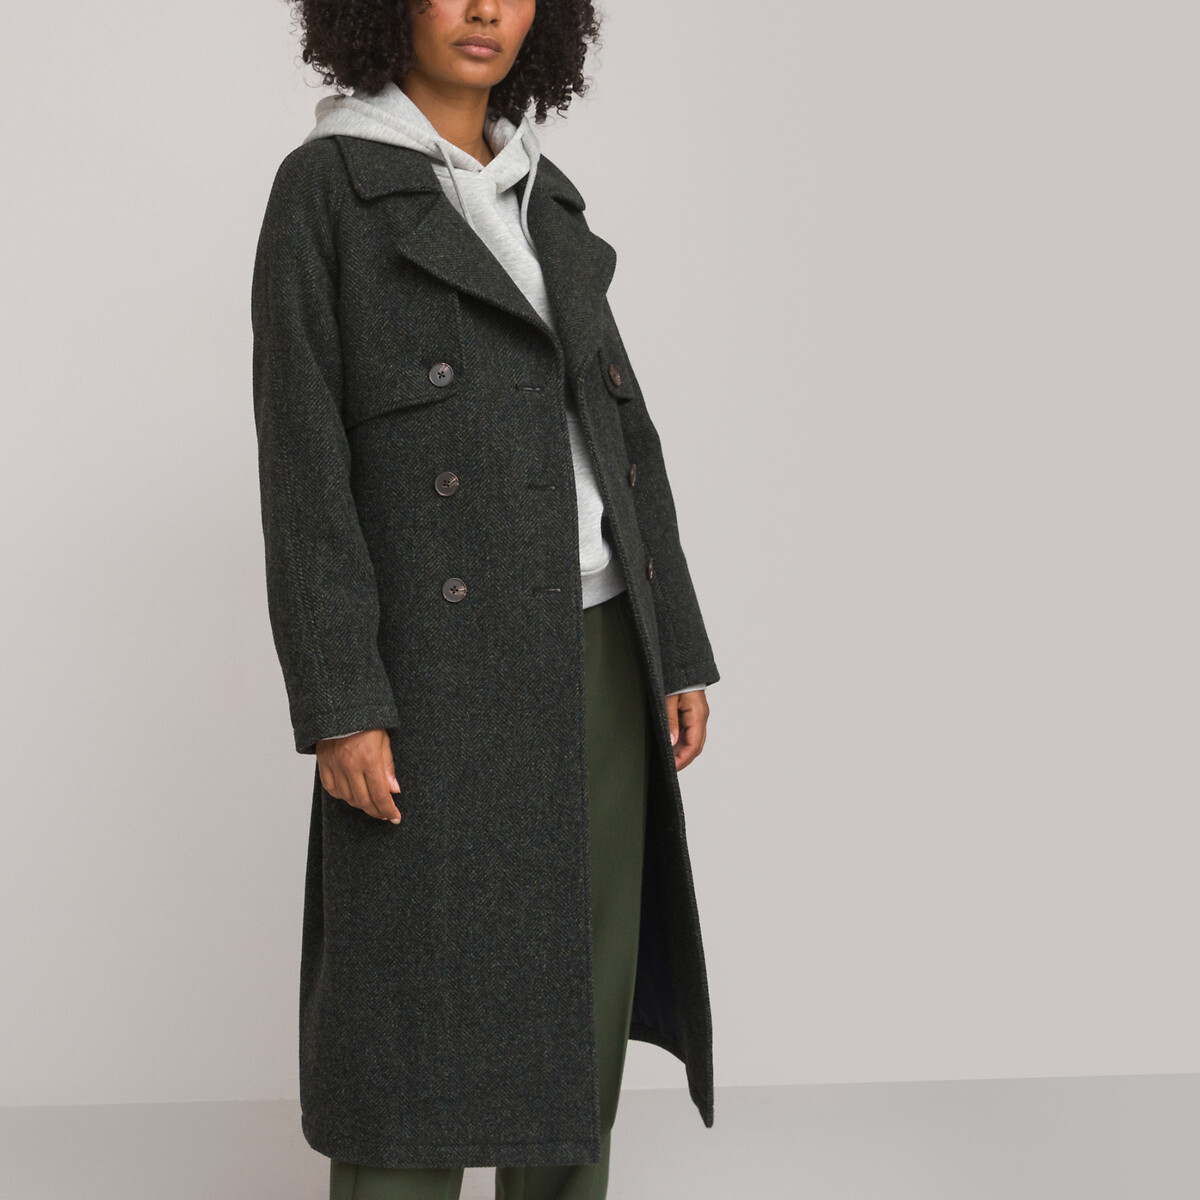 Пальто длинное из шерстяного драпа в ломаную саржу  36 (FR) - 42 (RUS) зеленый LaRedoute, размер 36 (FR) - 42 (RUS) Пальто длинное из шерстяного драпа в ломаную саржу  36 (FR) - 42 (RUS) зеленый - фото 1